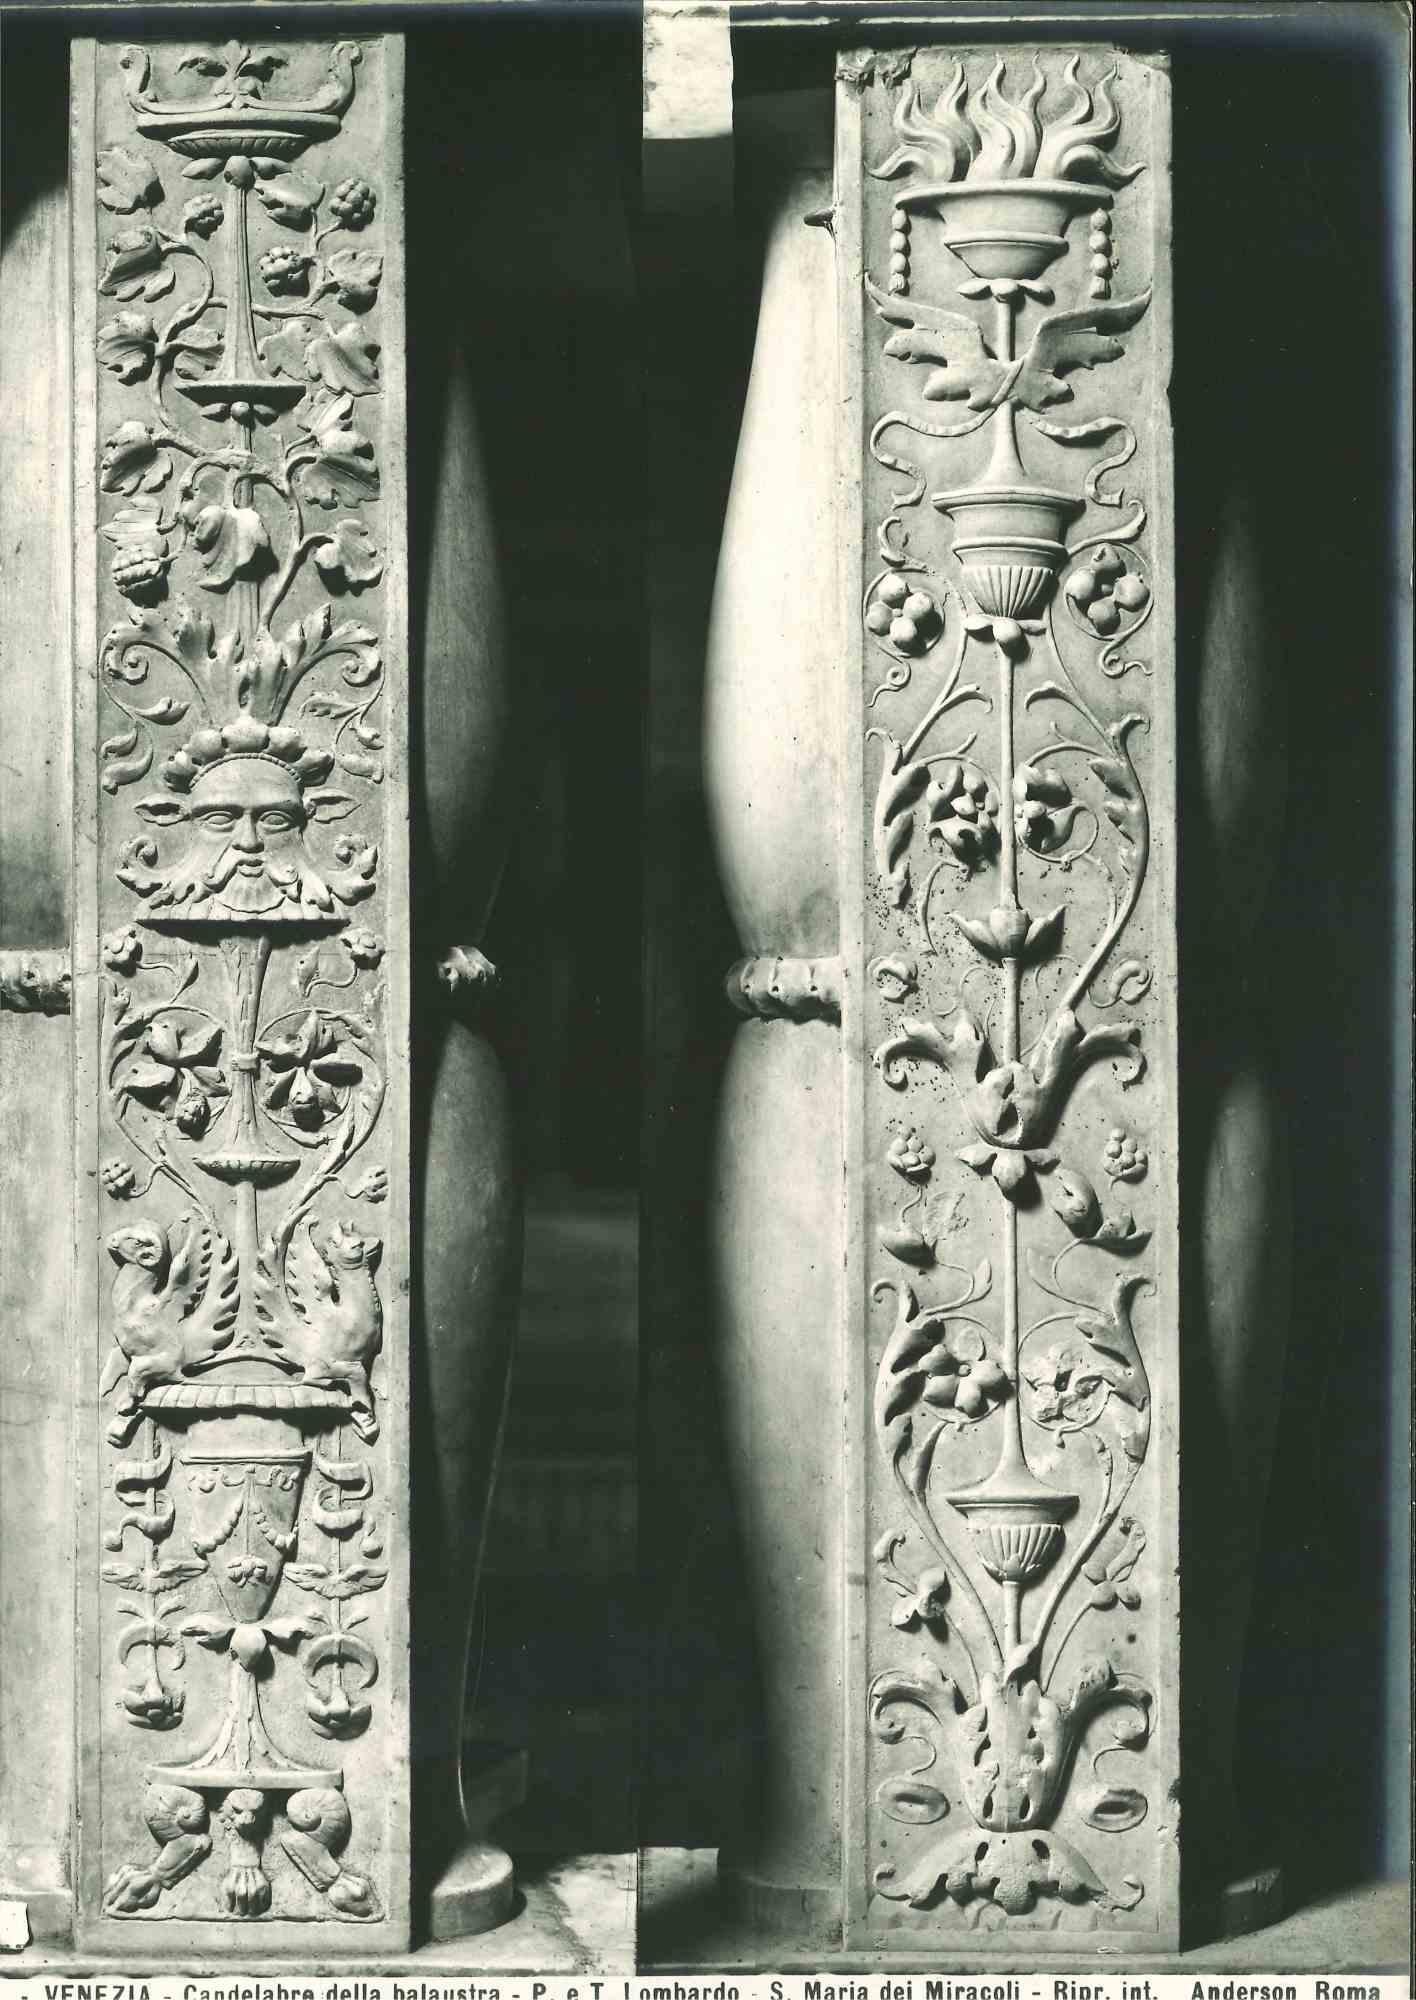 Unknown Figurative Photograph - Architecture and Art Photo - S. Maria dei Miracoli Church - Venice - 1920s